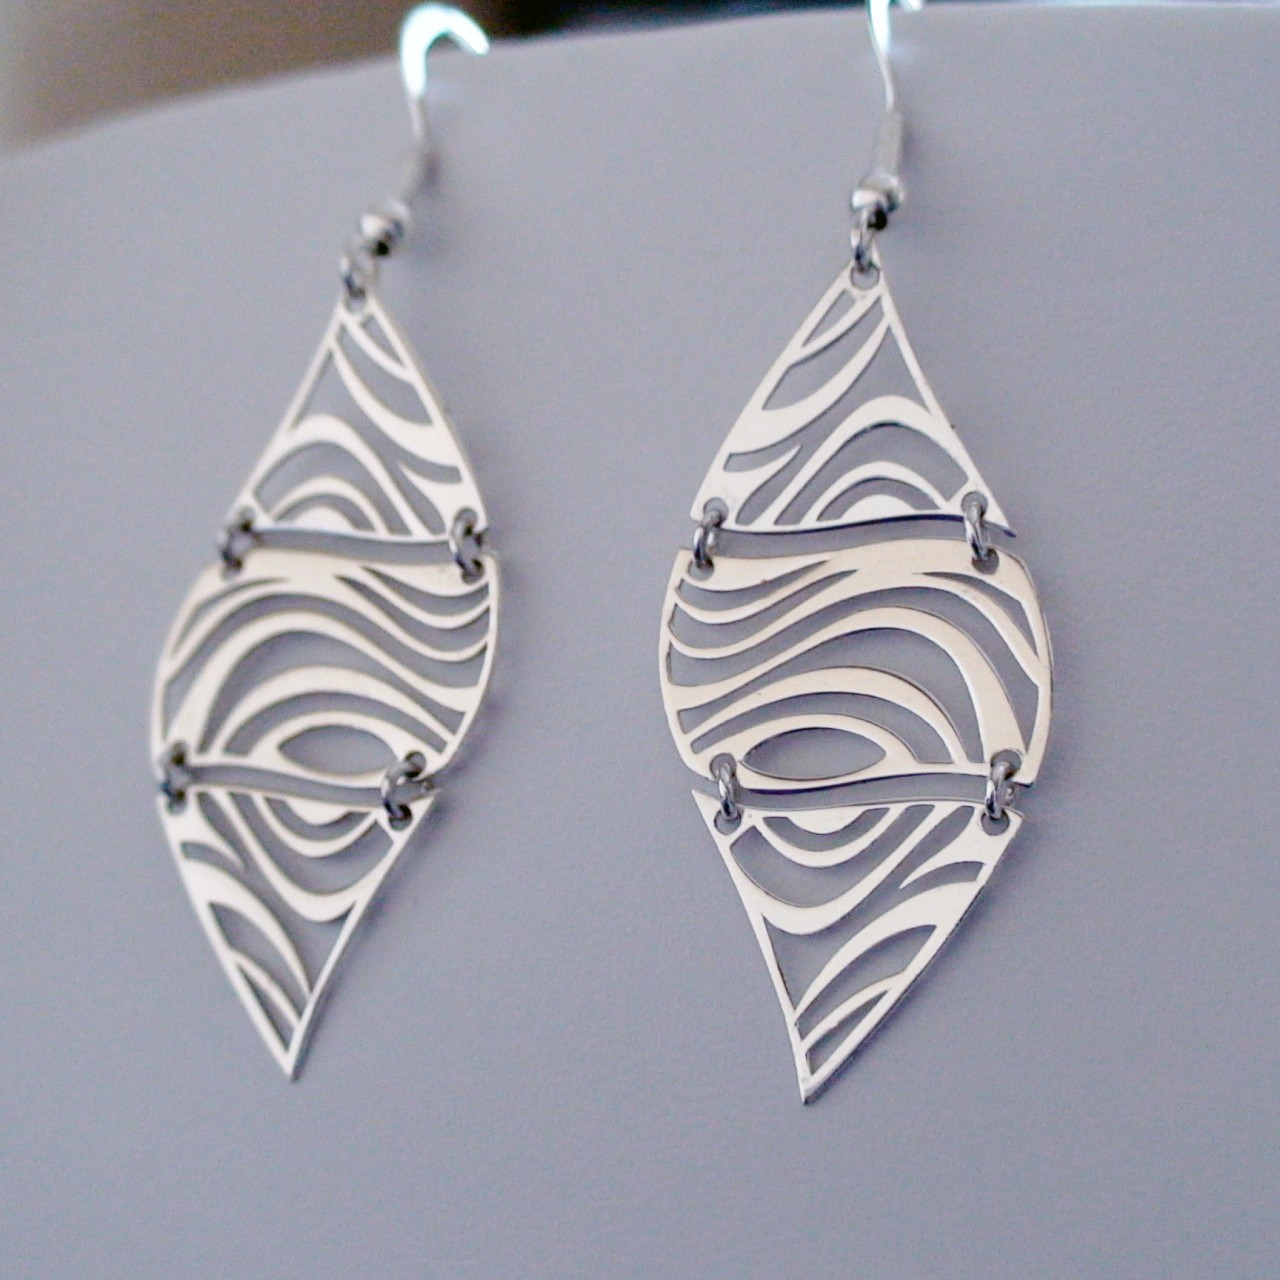 Zebra Print Earrings - Sterling Silver Dangle Earrings